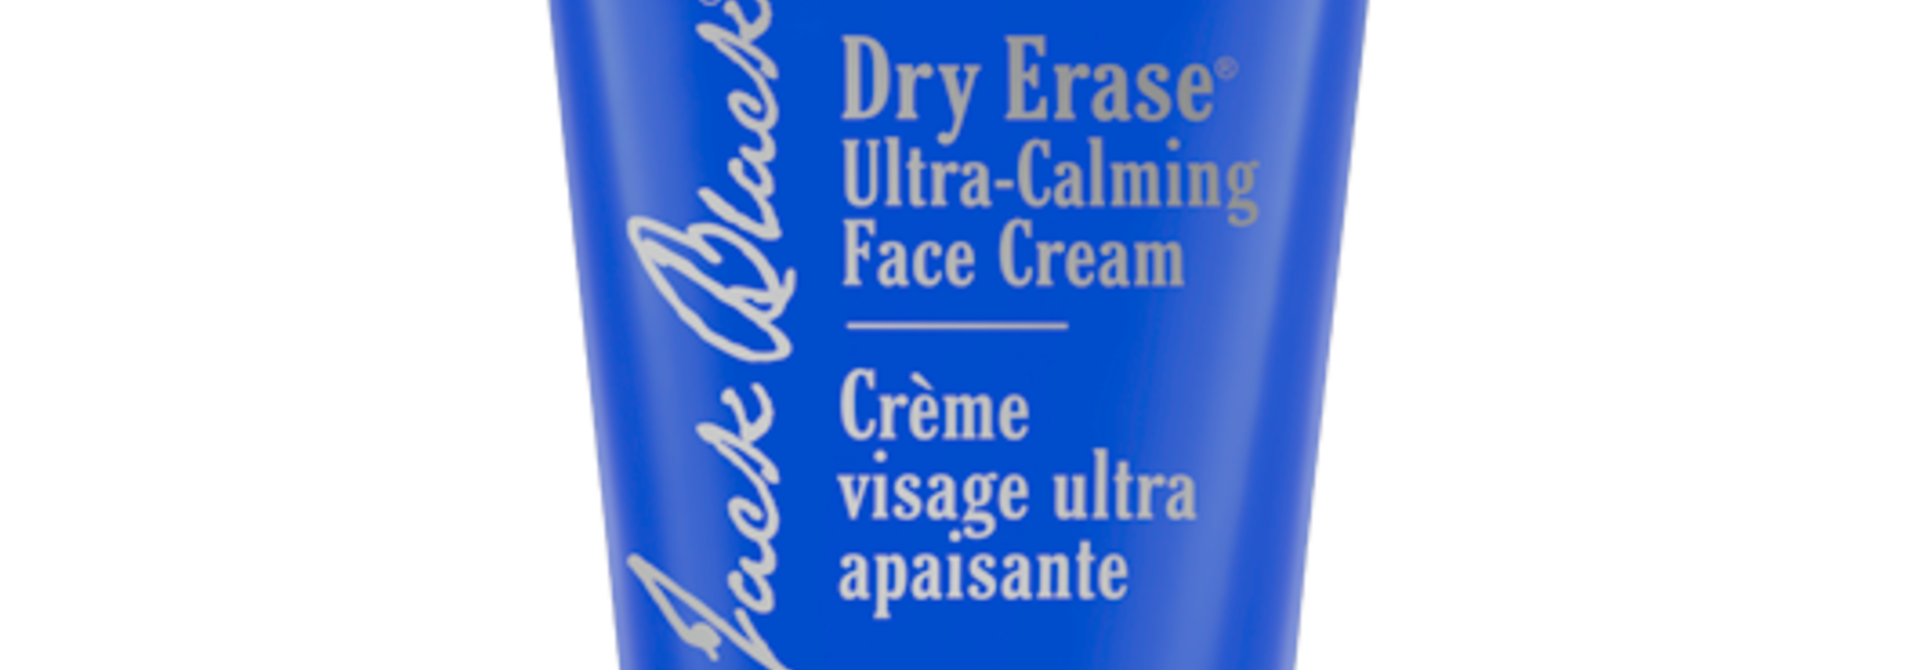 Dry Erase Ultra-Calming Face Cream | The Facial Skincare Collection